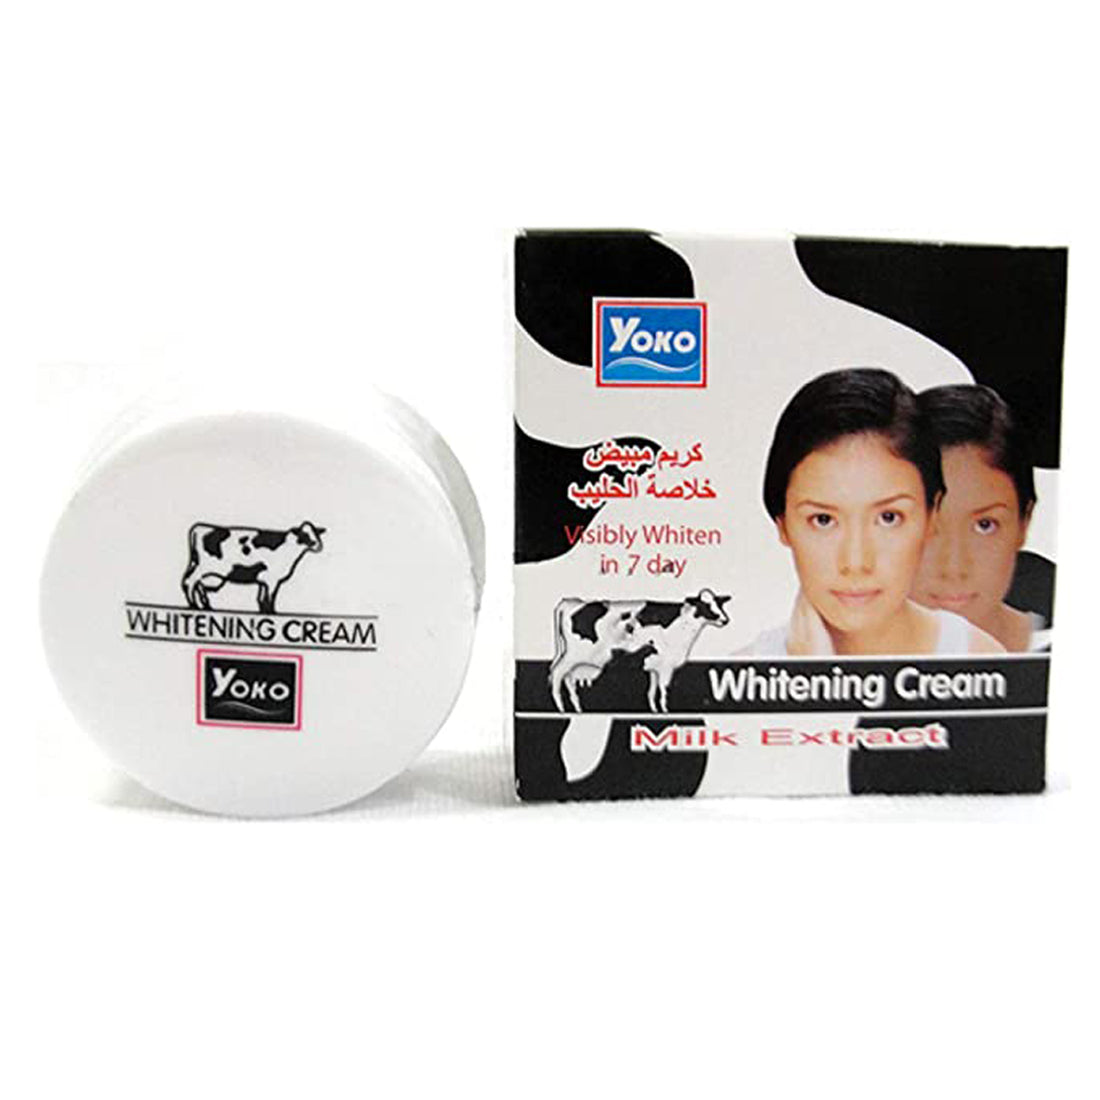 Yoko Whitening Milk Extract Cream 4gm